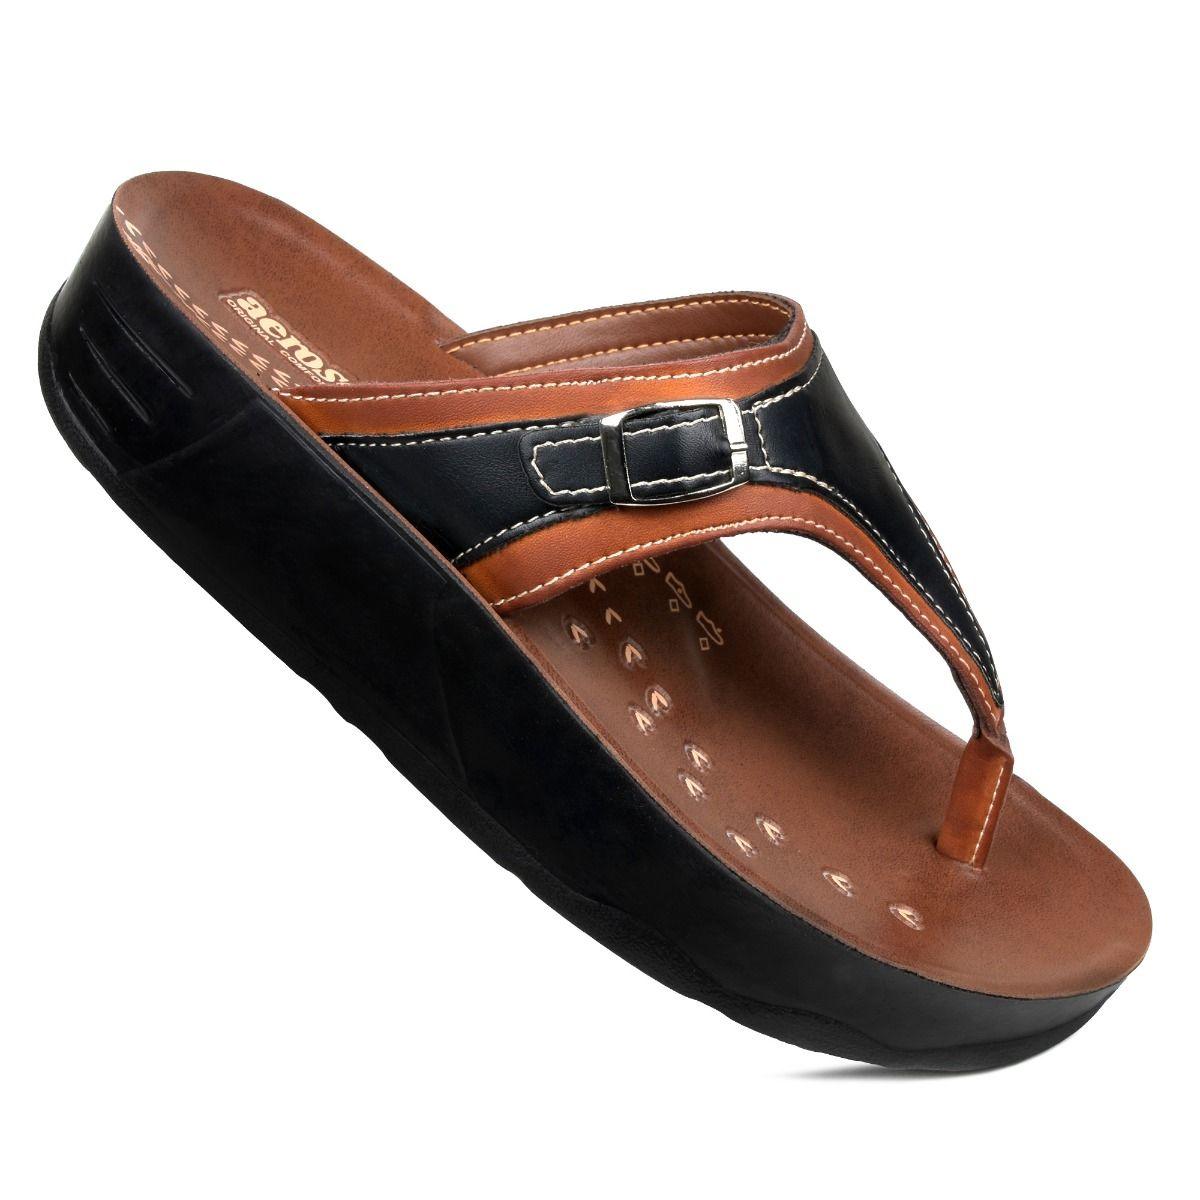 Comfortable Platform Summer Sandals - Kevous